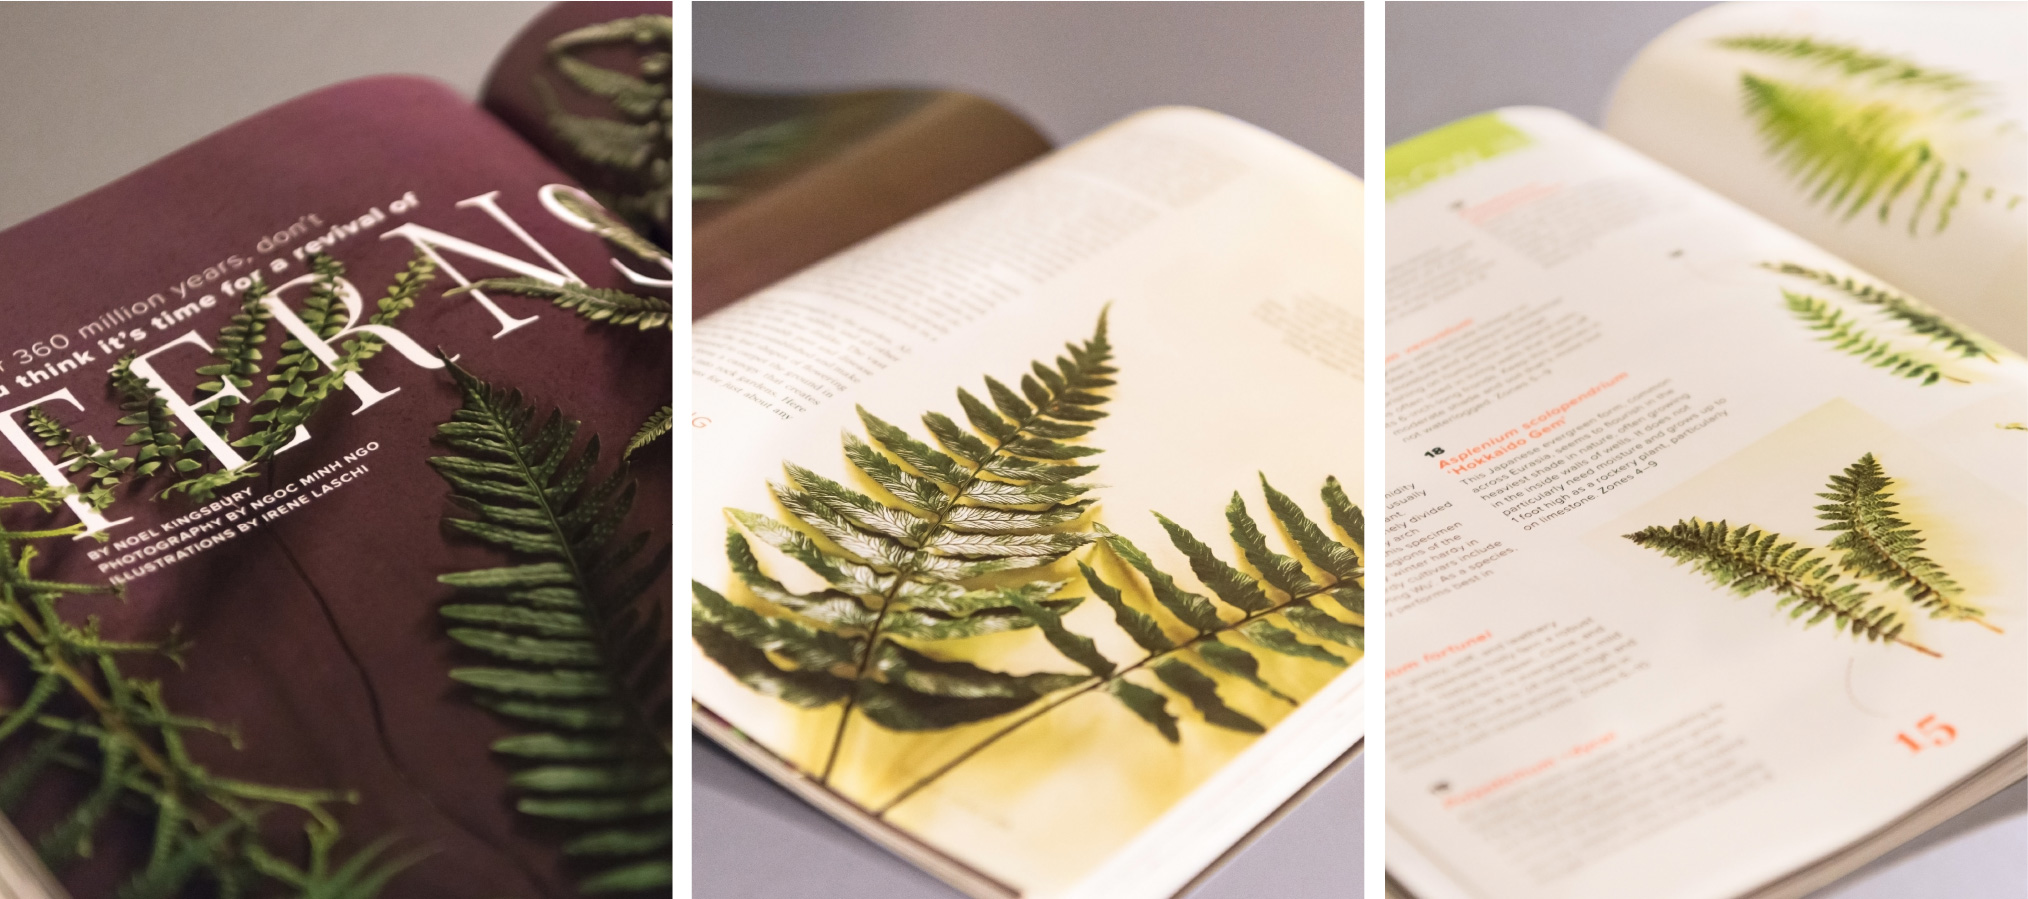 Ferns - Garden Design Magazine